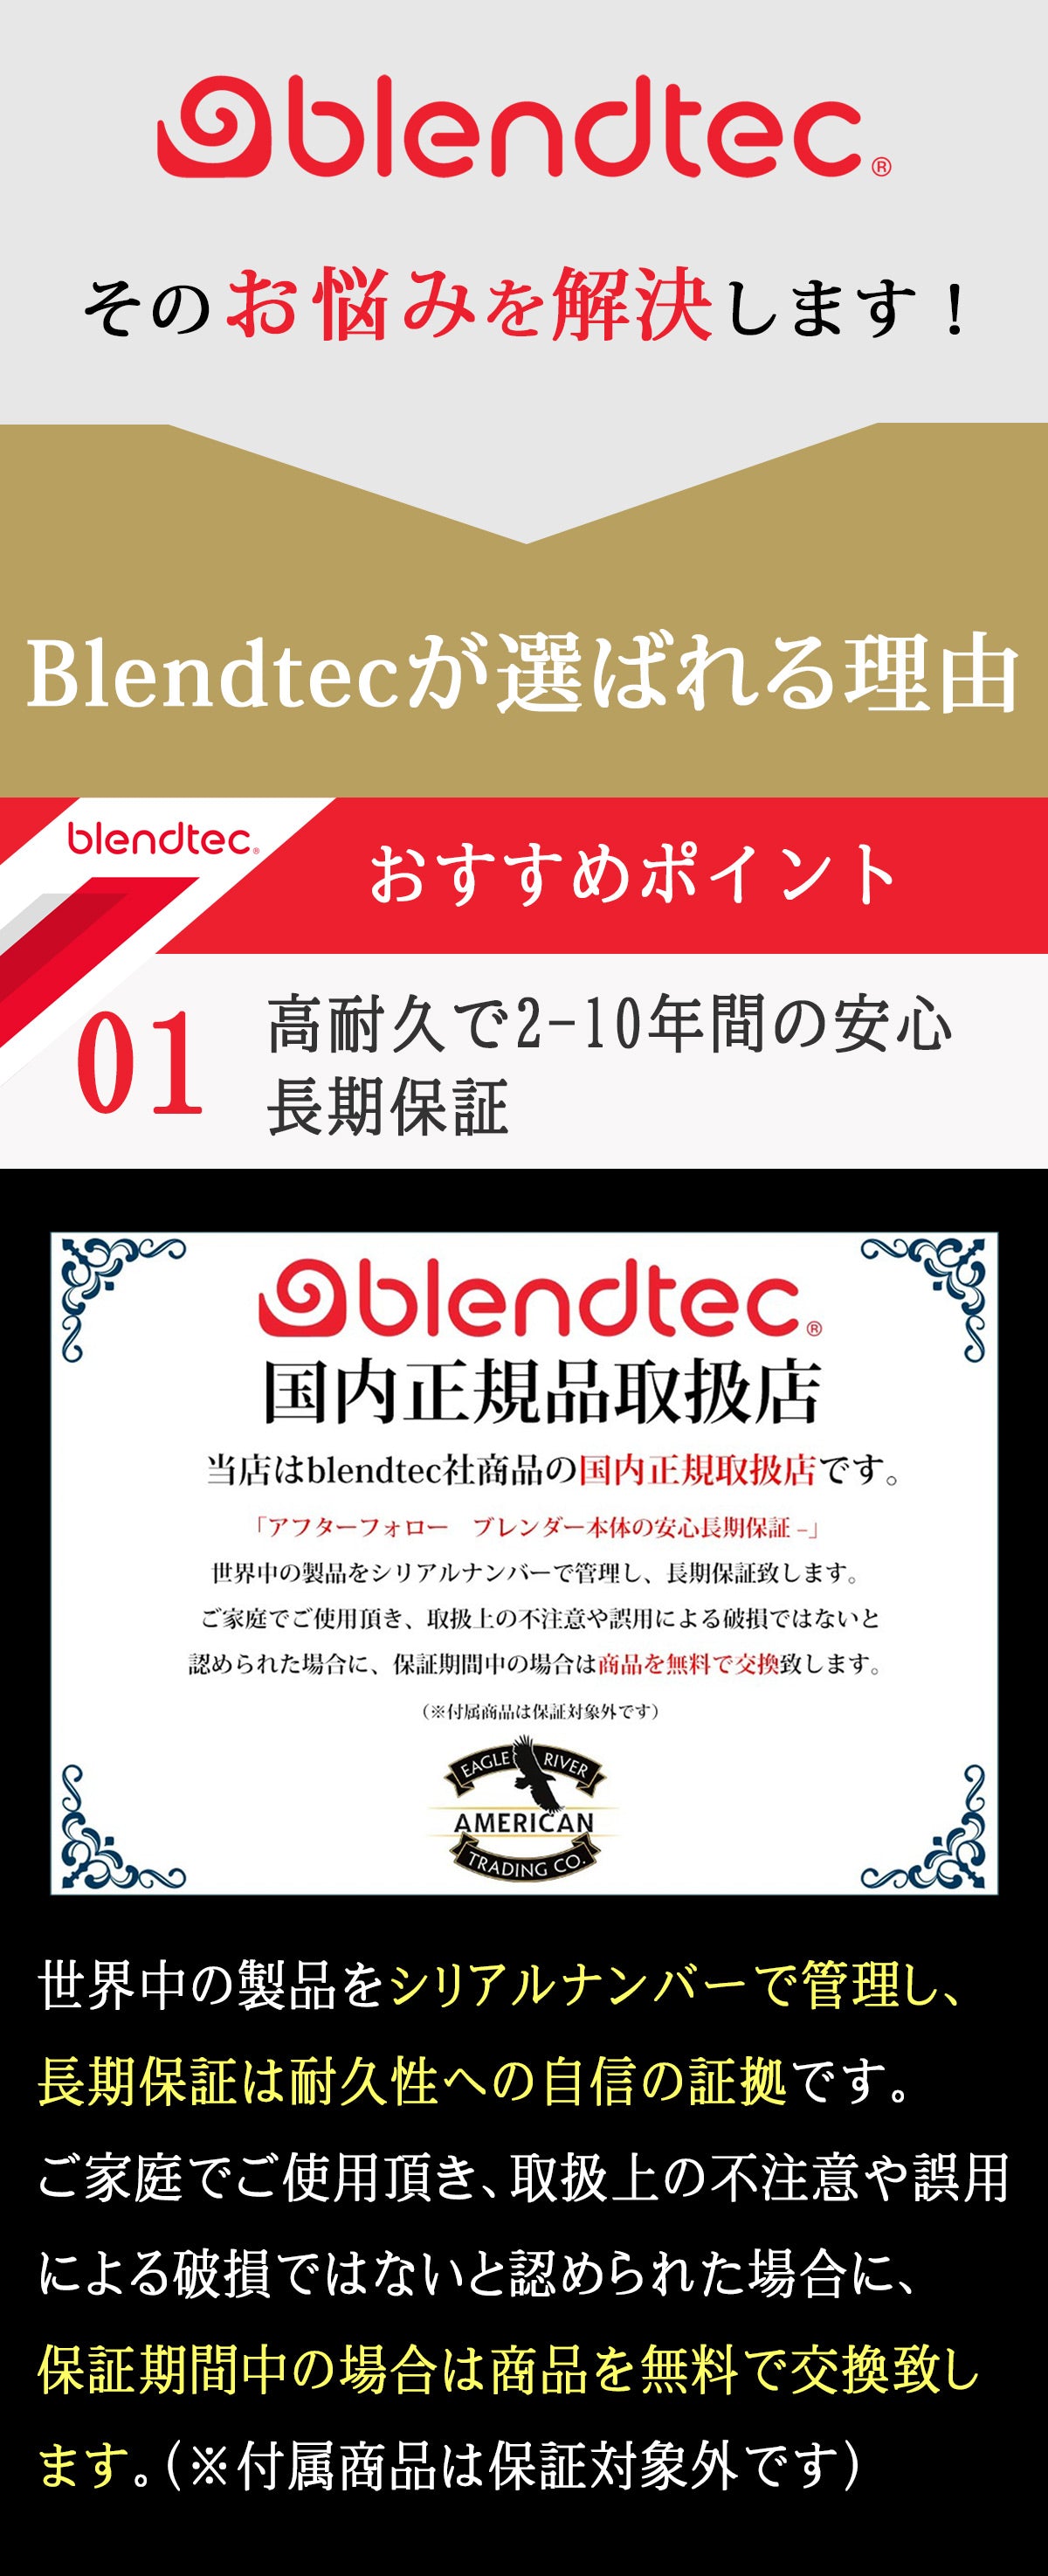 Blendtec ブレンテック ブレンドテック【2年保証】Total Blender トータルブレンダー 【WildSide+ Jar（ワイルドサイドプラスジャー）付属】